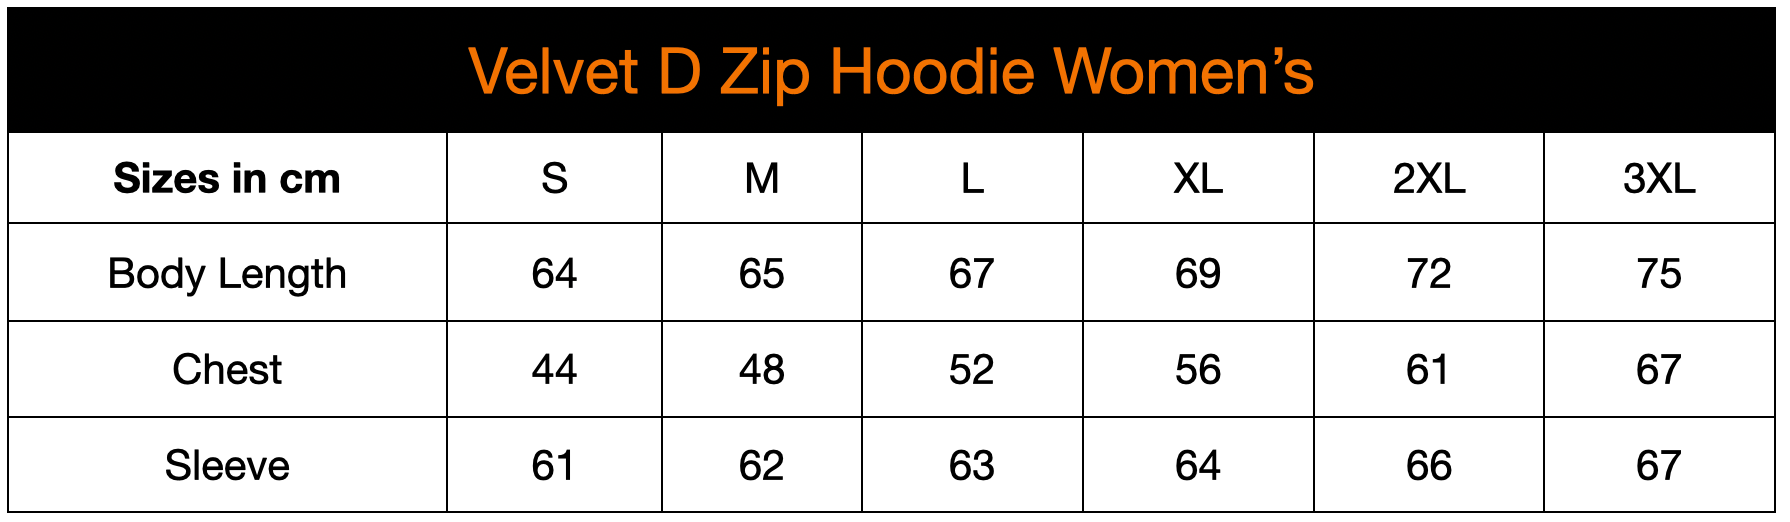 Velvet D Zip Hoodie - Women's